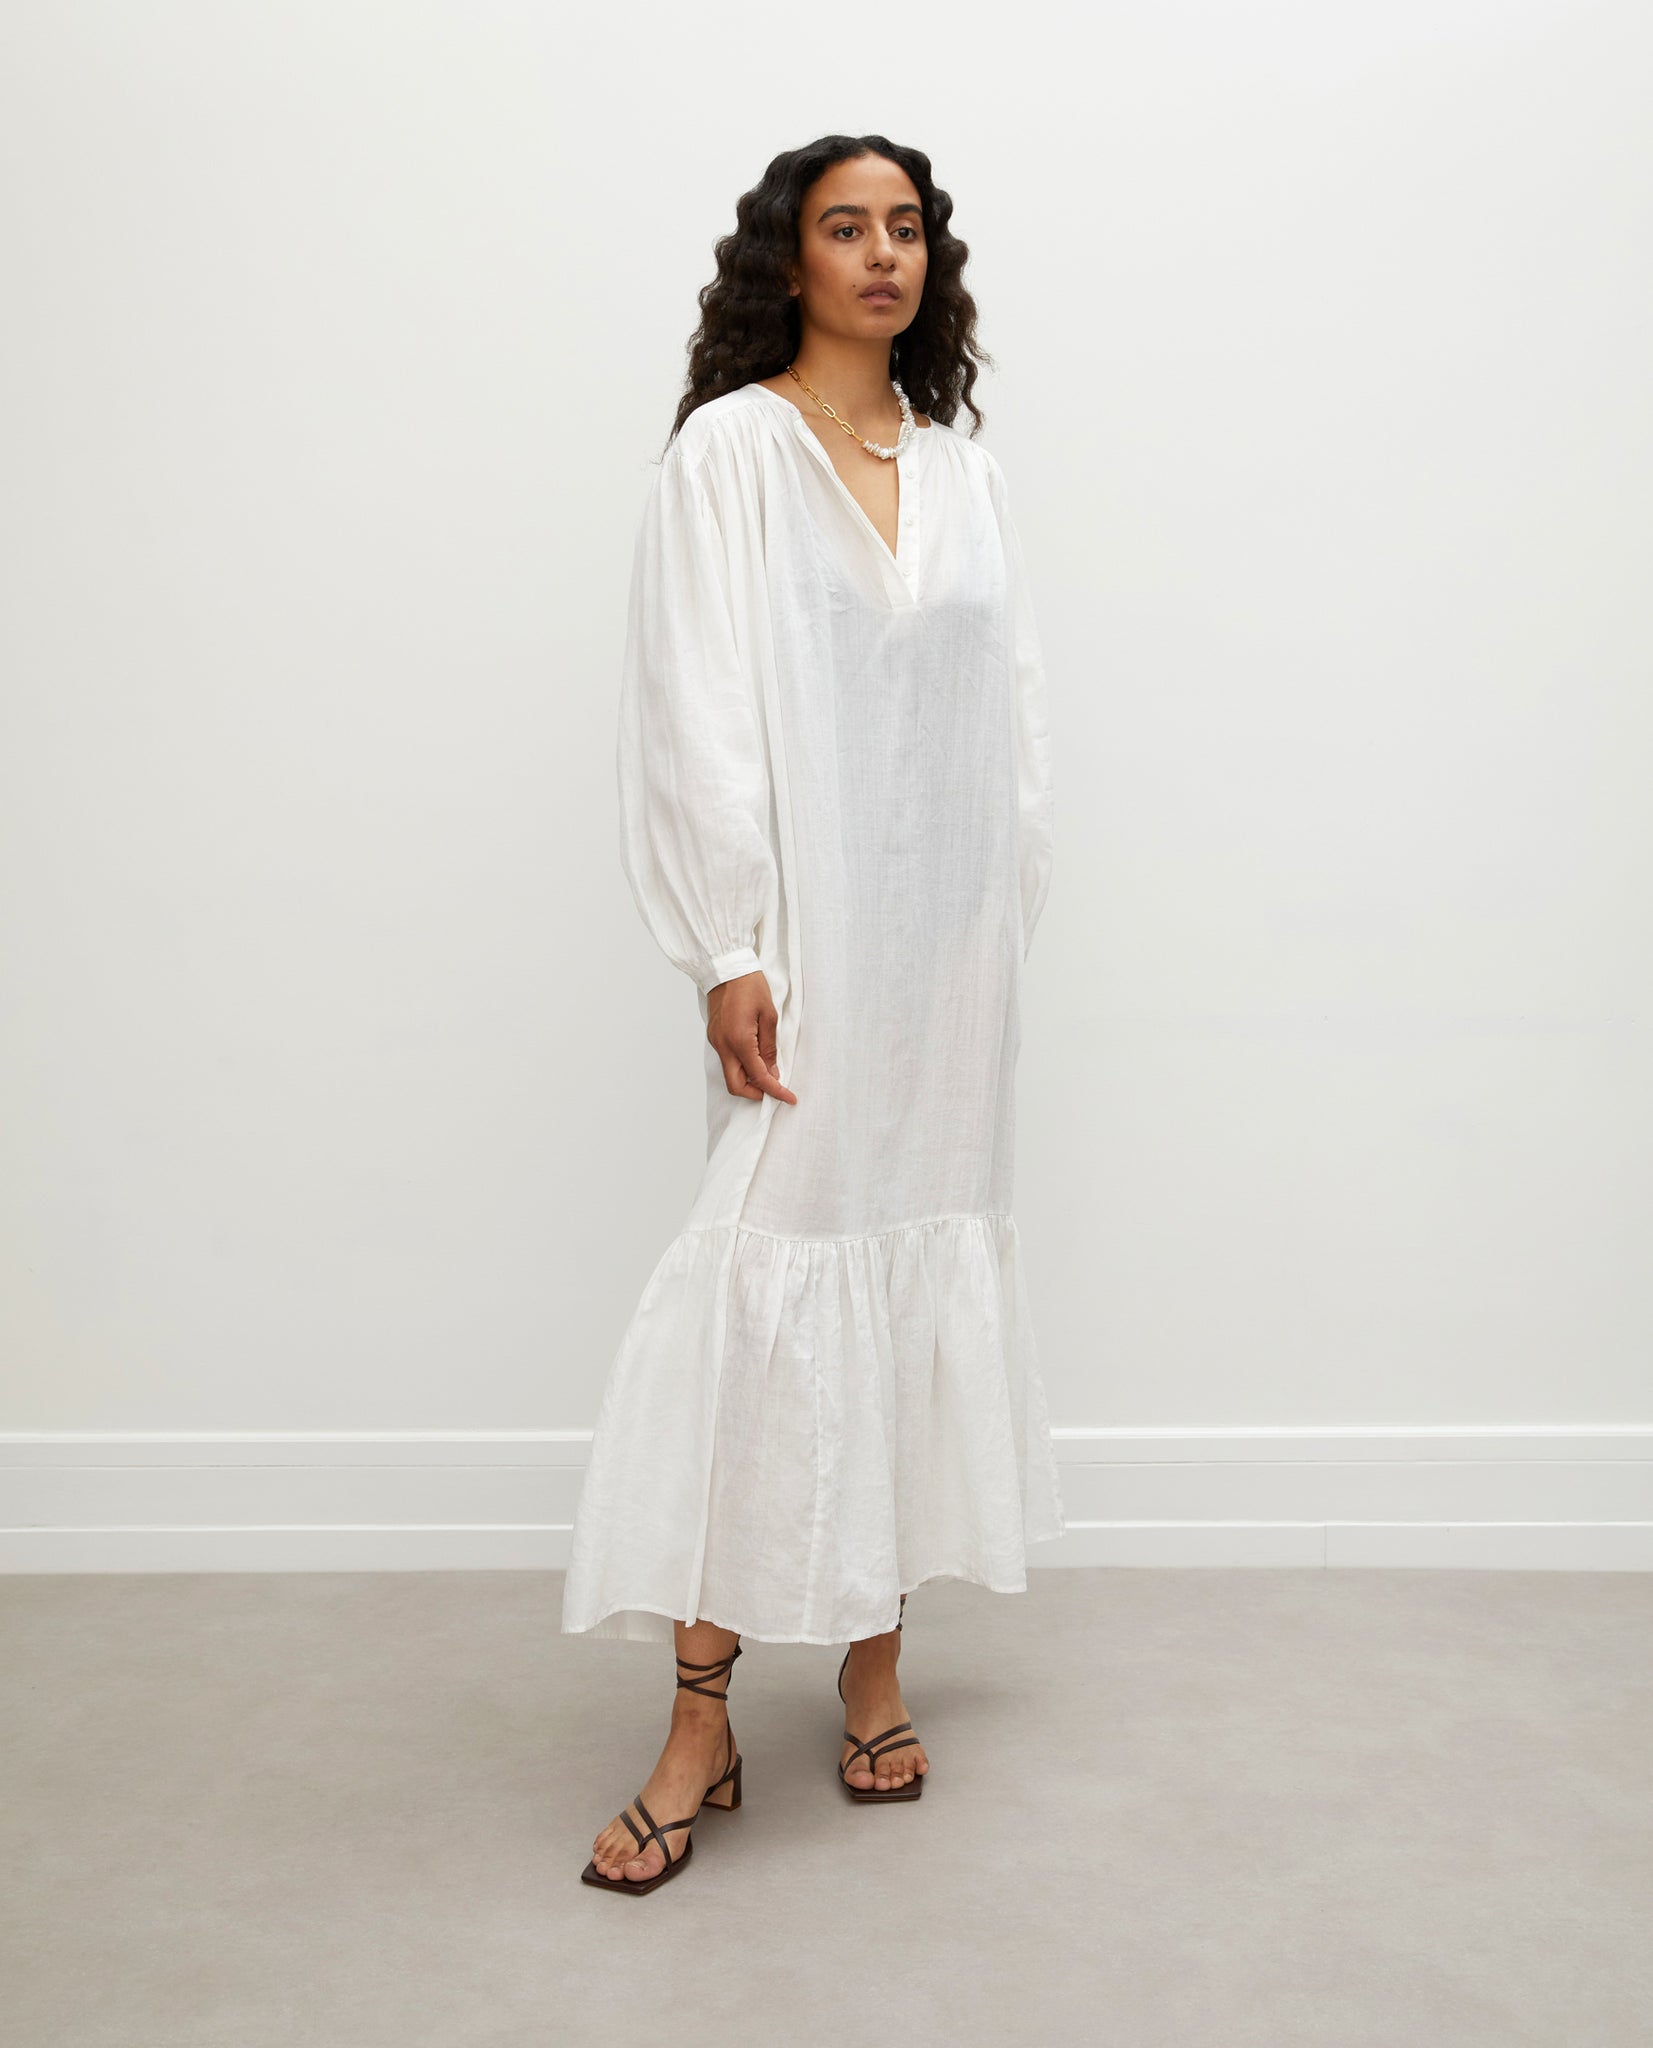 Linen dress in white